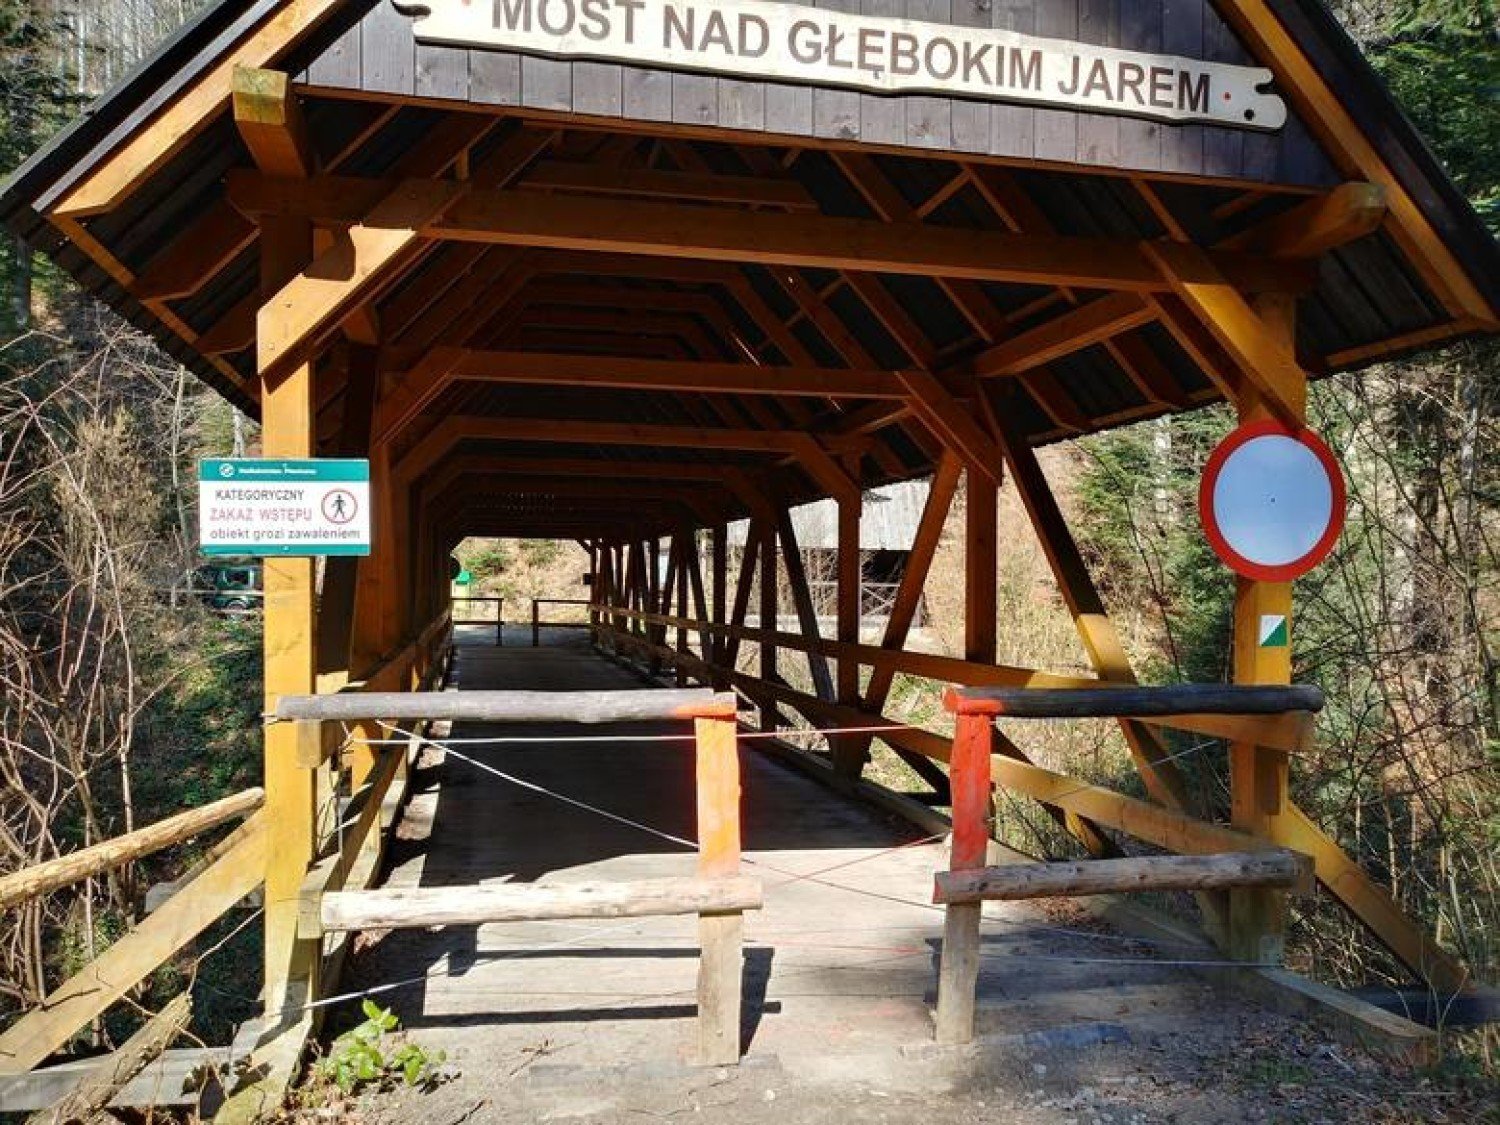 Beskid Sądecki. Most nad Głębokim Jarem czeka na rozbiórkę